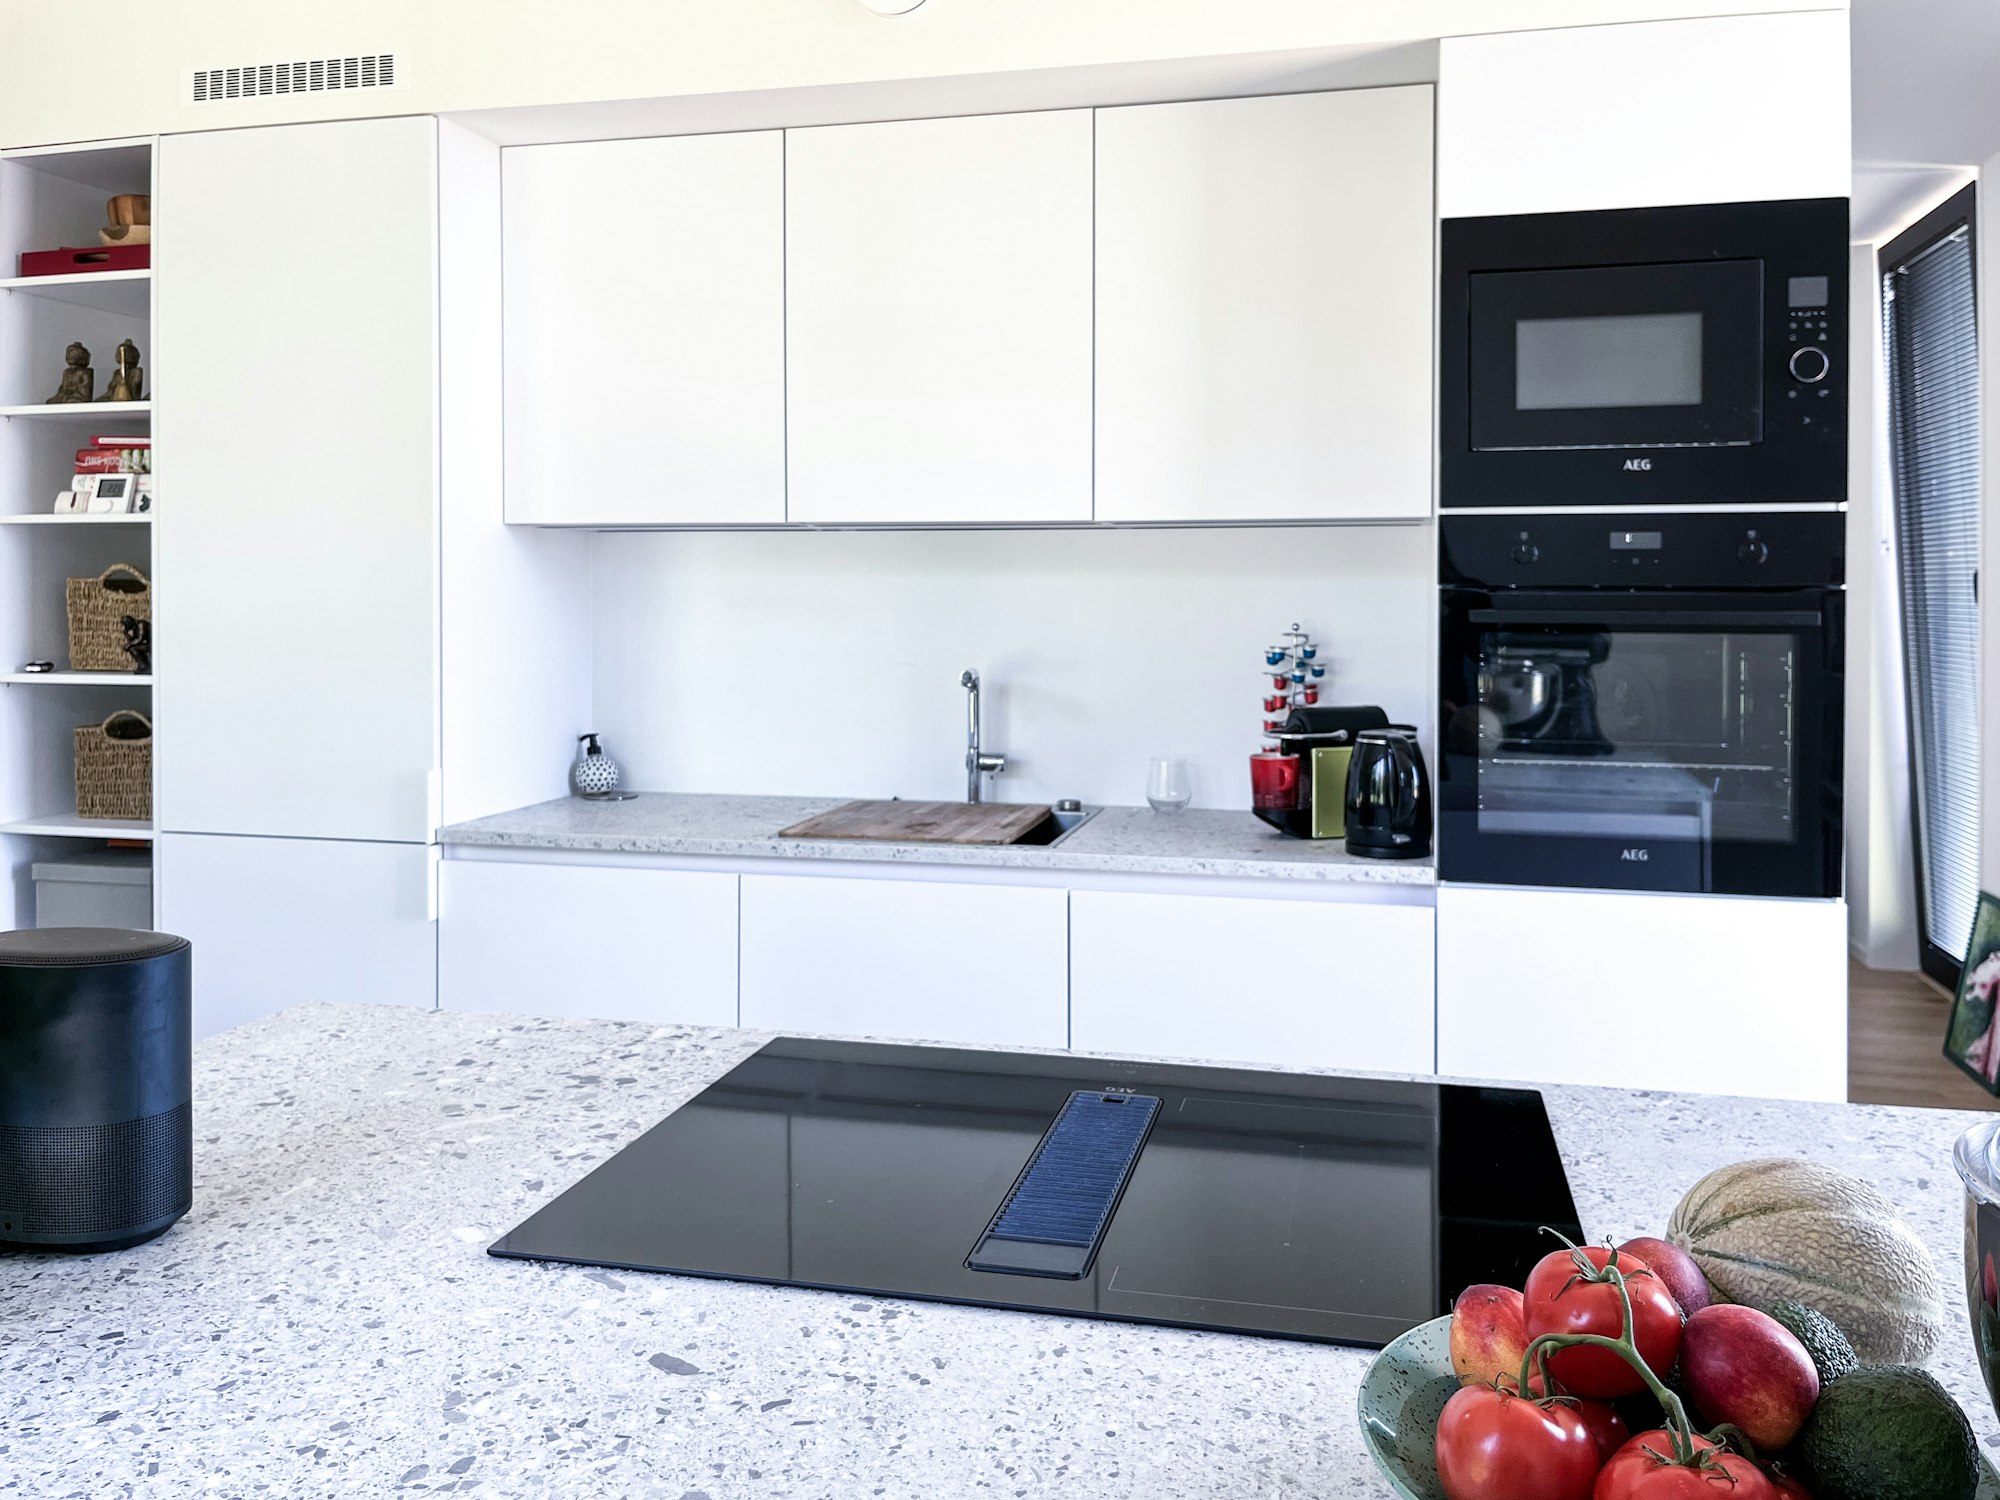 Keuken in een prefab woning Skilpod #80 met terrazzo stijl werkblad en inductie kookplaat met ingebouwde dampkap